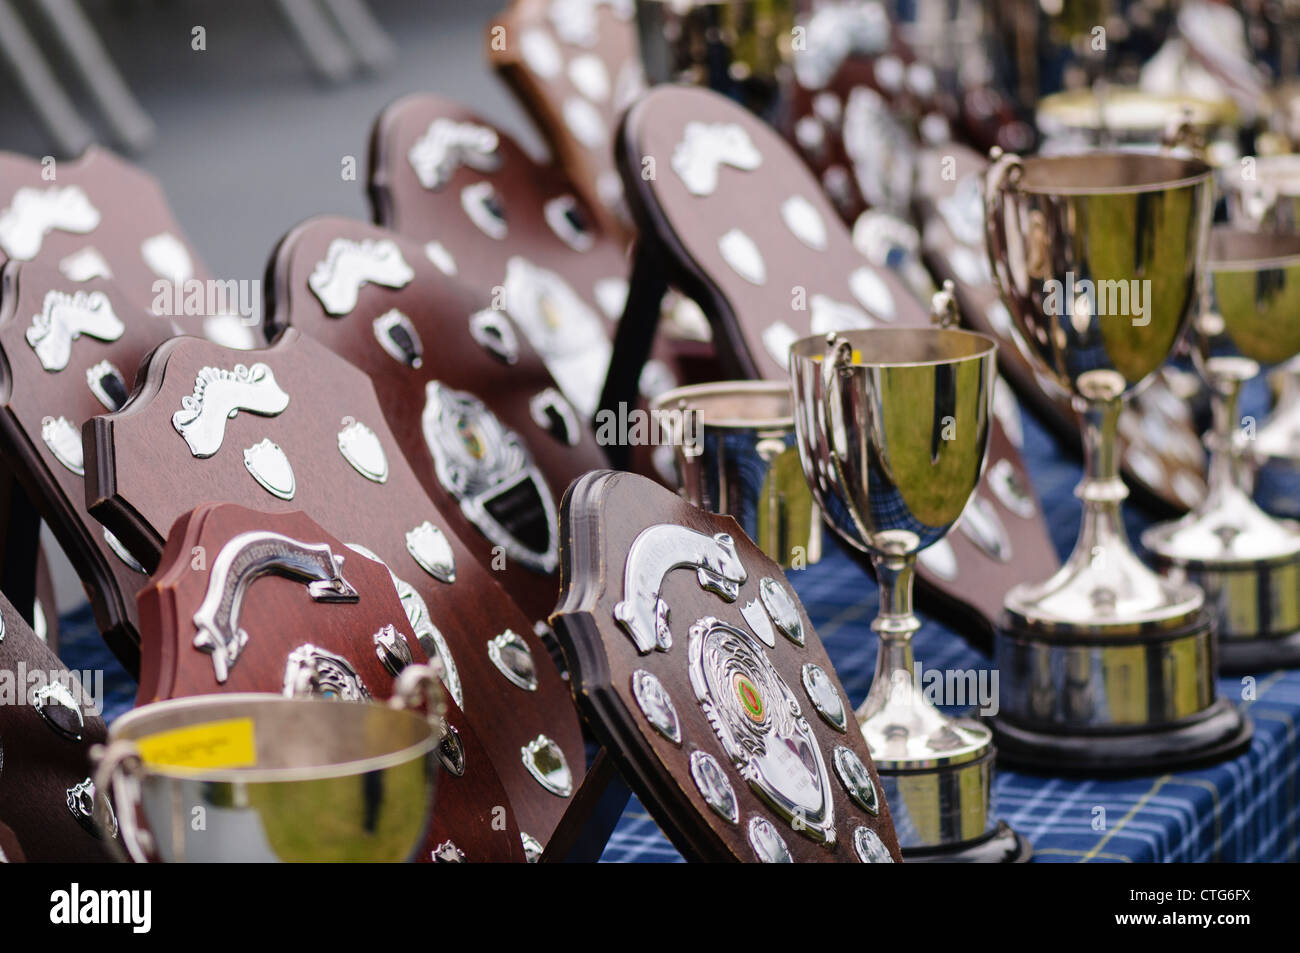 Tabella coperta in trofei e premi tra cui placche in legno e coppe d'argento Foto Stock